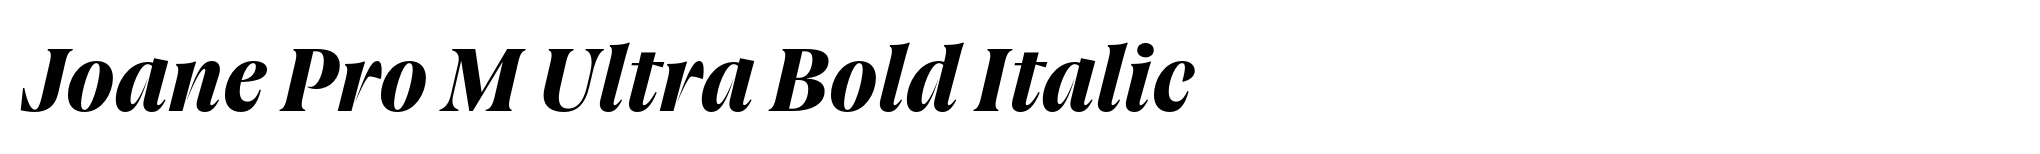 Joane Pro M Ultra Bold Italic image